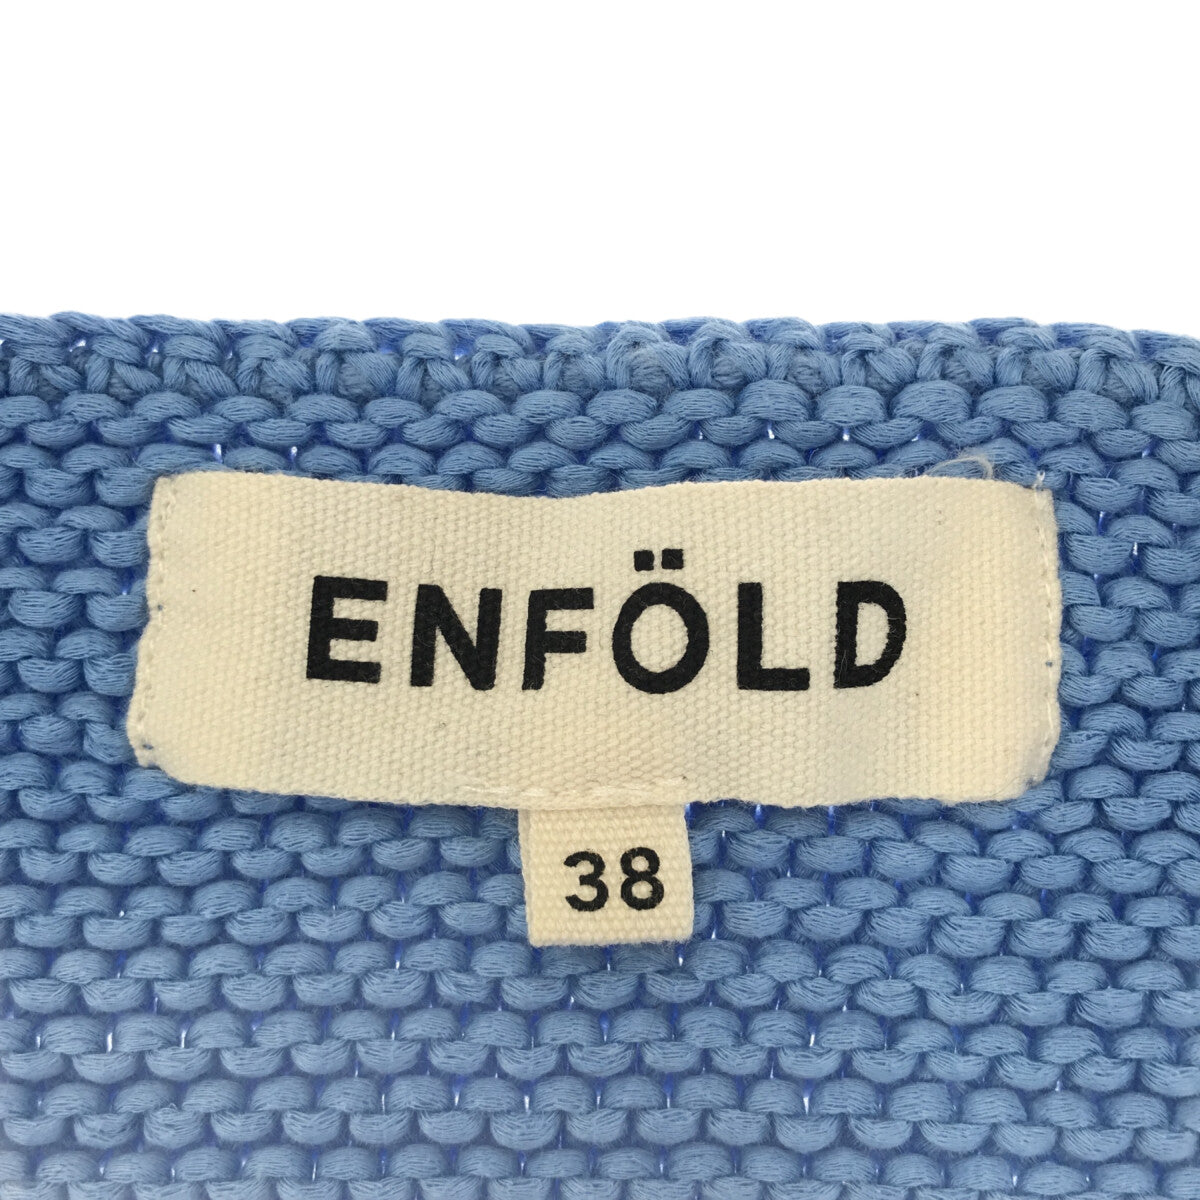 ENFOLD / エンフォルド | コットン Vネック ニットベスト | 38 